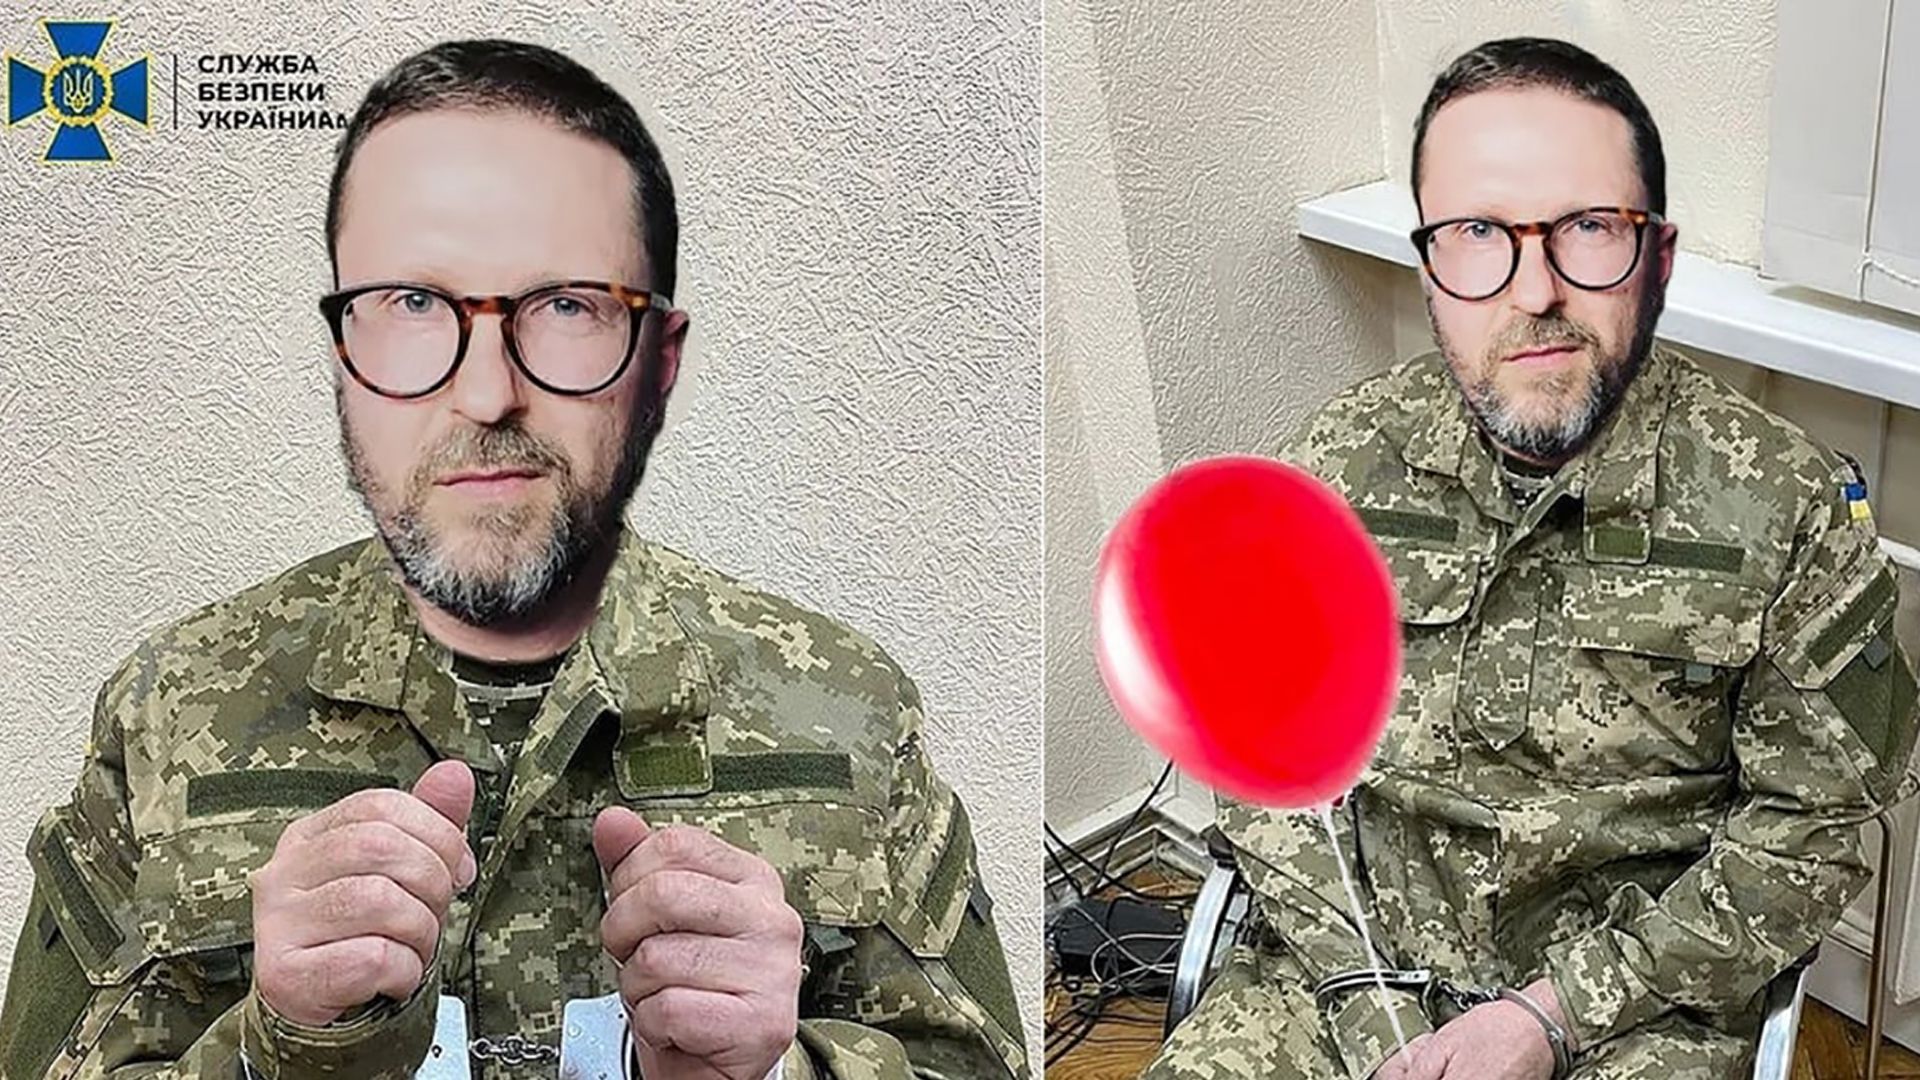 Шарій здувся: як відреагували українці на затримання проросійського блогера – добірка мемів